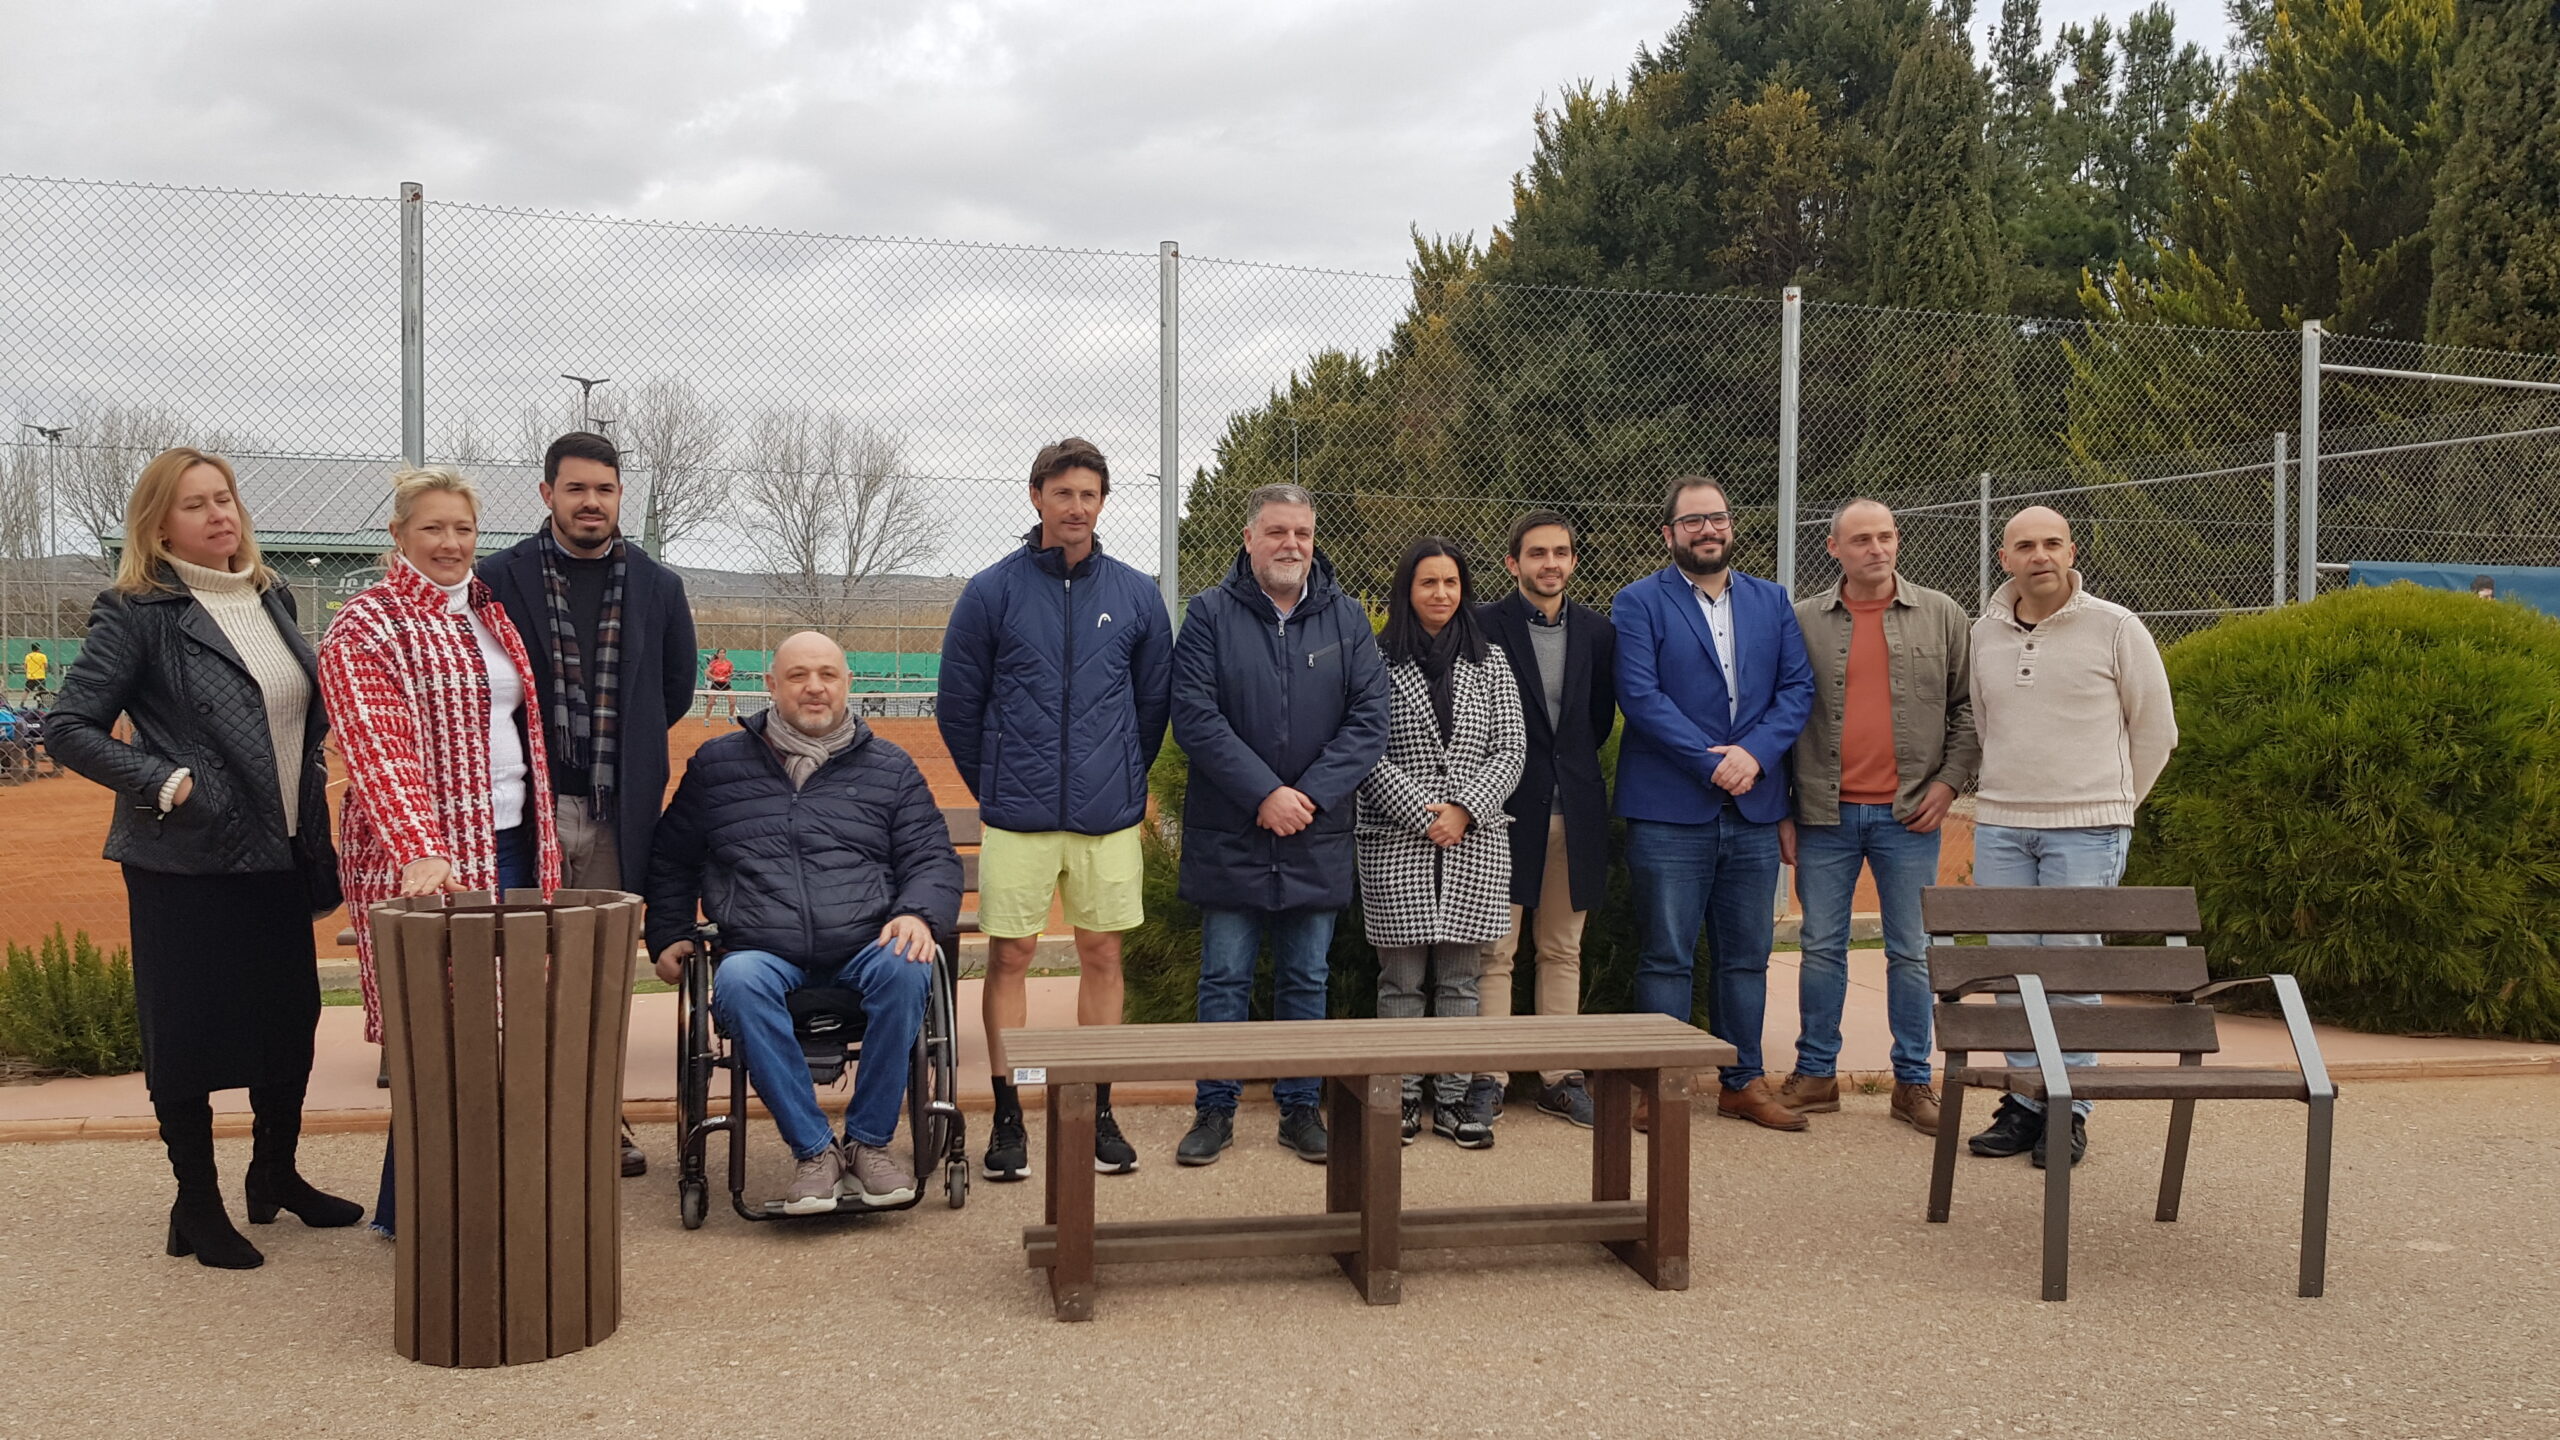 Integrados instala 30 bancos de madera plástica en JC Ferrero- Equelite Sport Academy